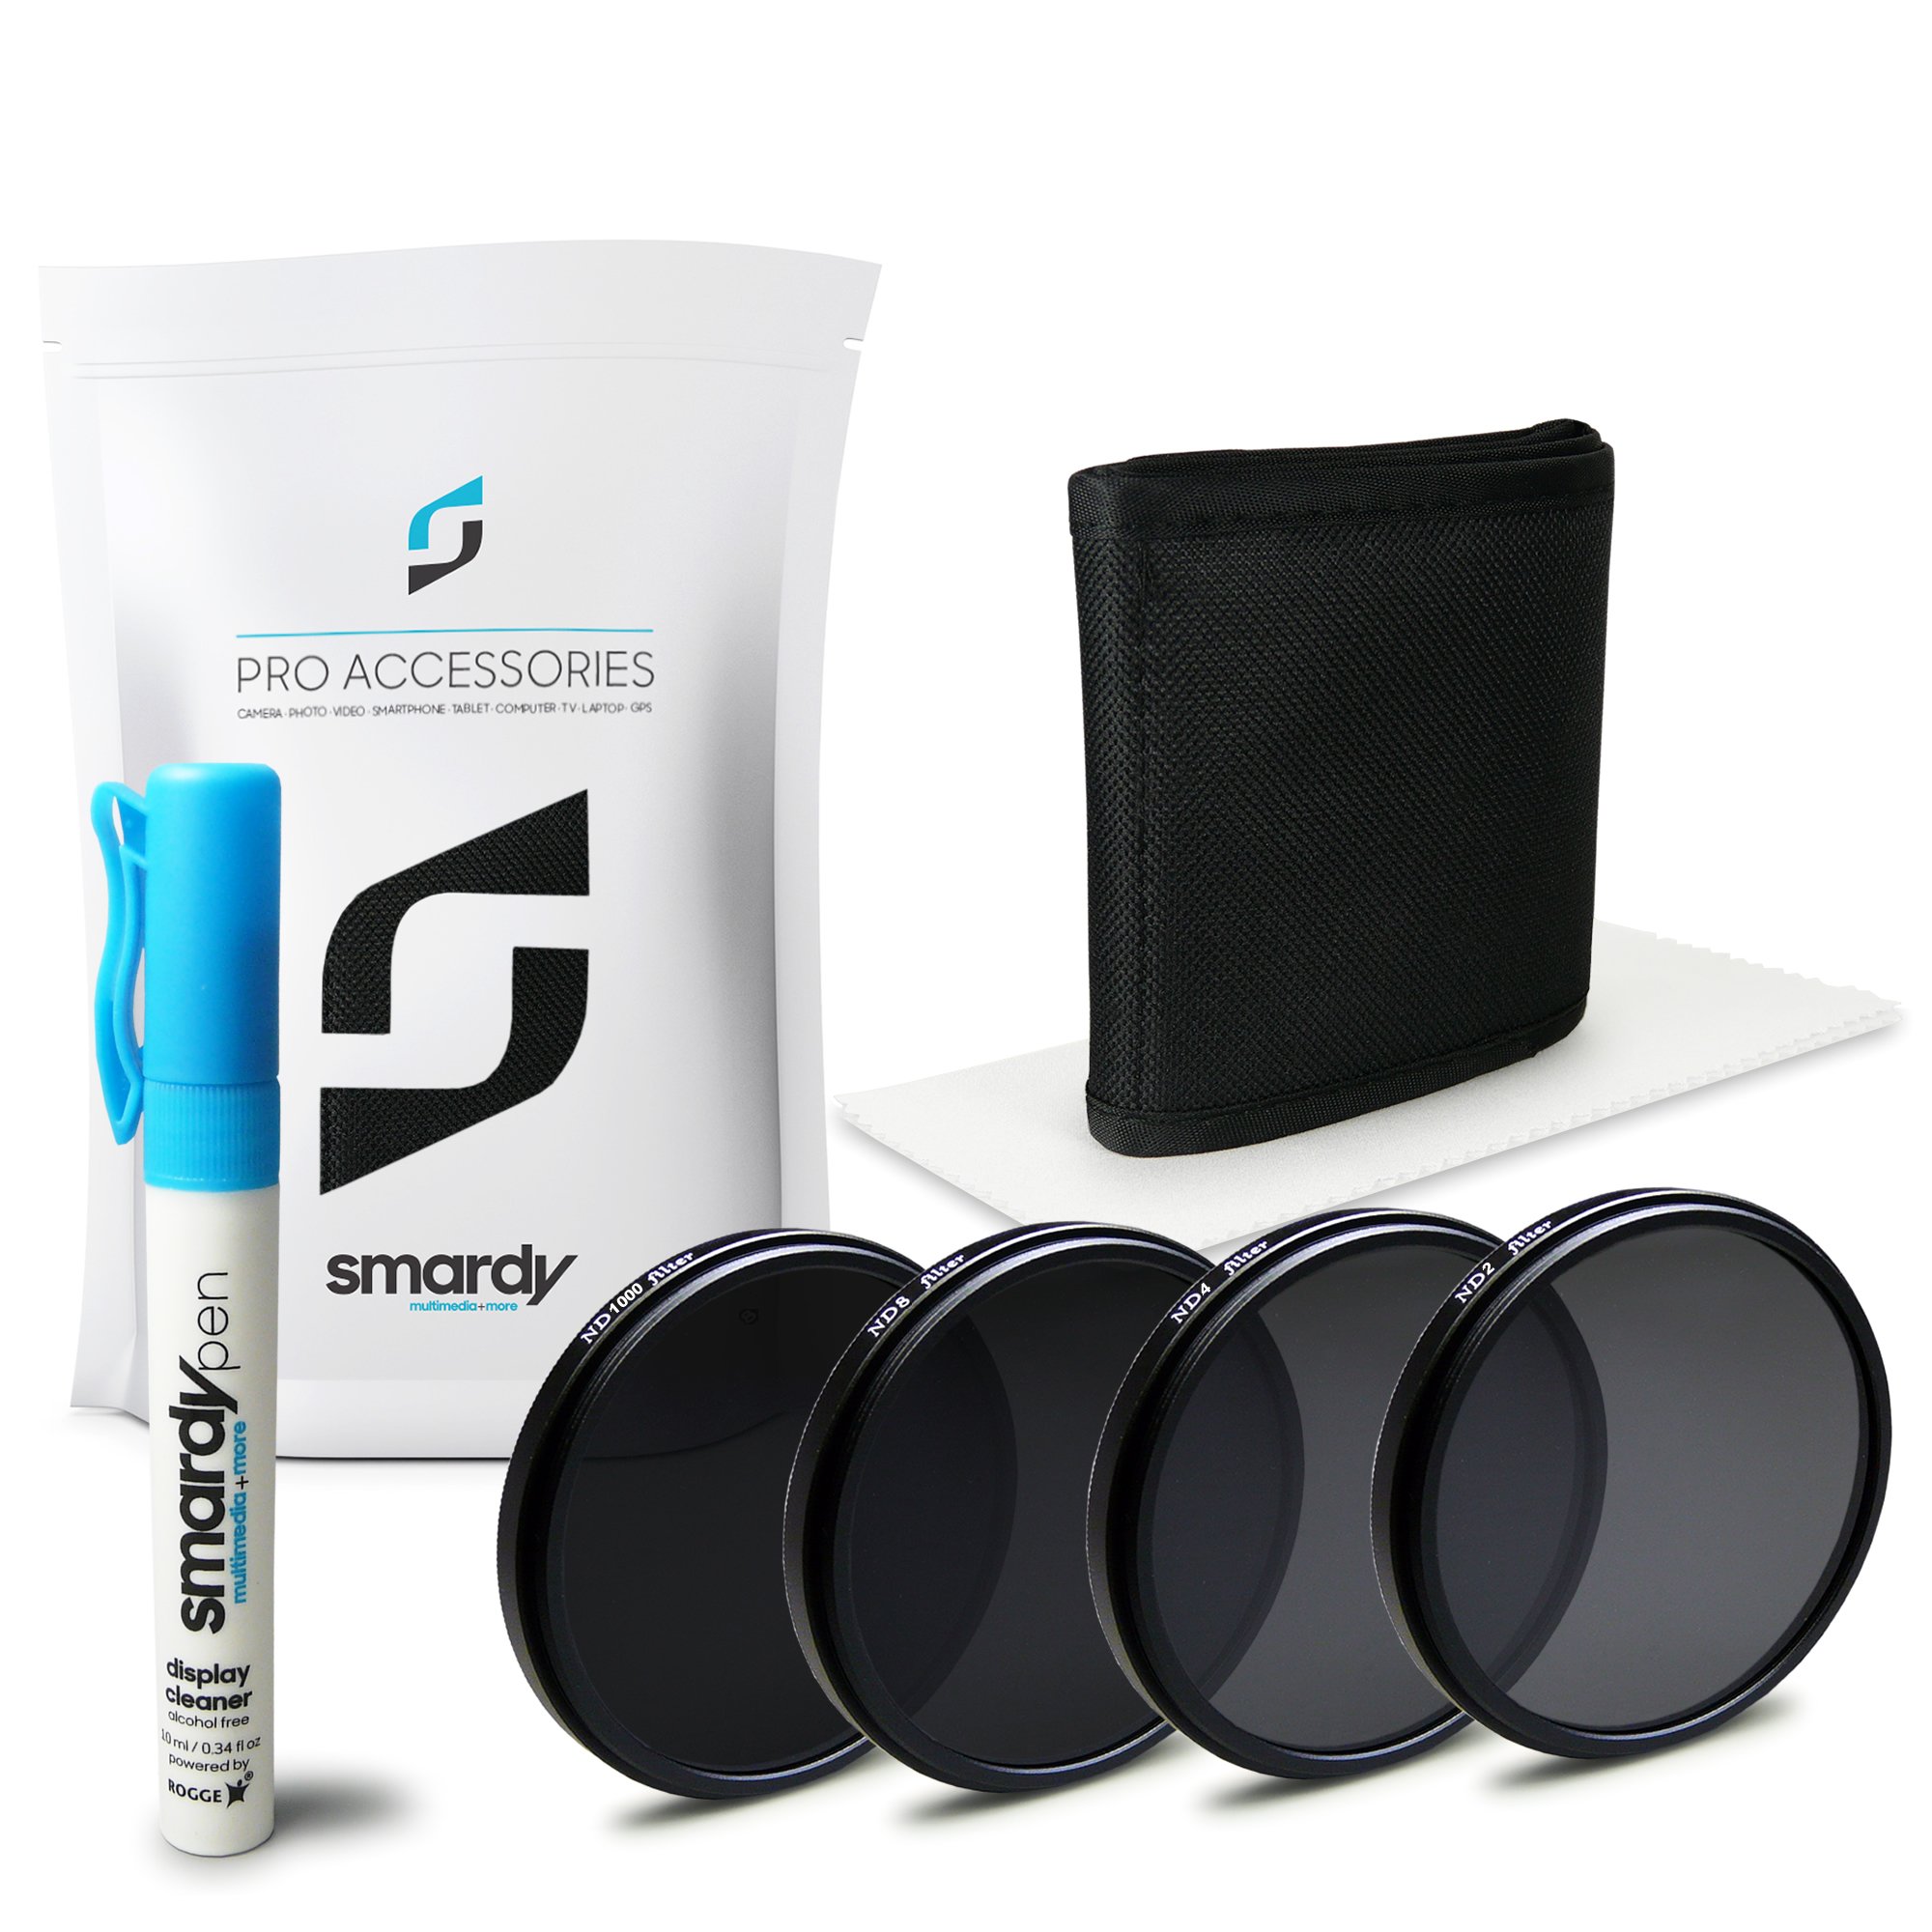 smardy 62mm Filterset (ND2, ND4, ND8, ND1000) + Tasche + Microfaser-Reinigungstuch + 10ml SprayPen mit Rogge Lens Sensor Cleaner